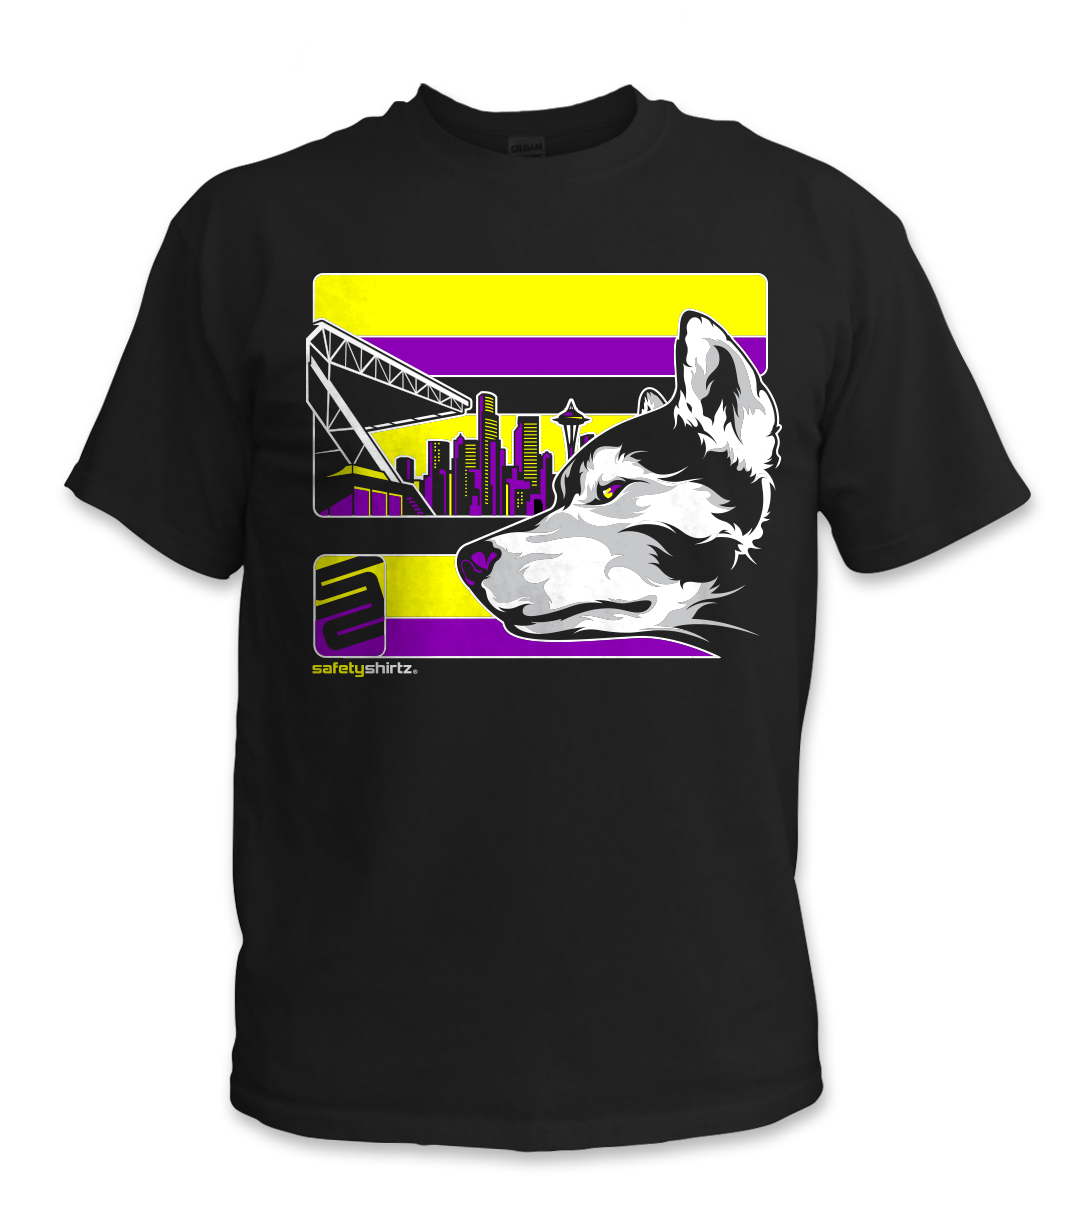 SafetyShirtz - Purple Reign Safety Shirt - Yellow/Purple/Black ...